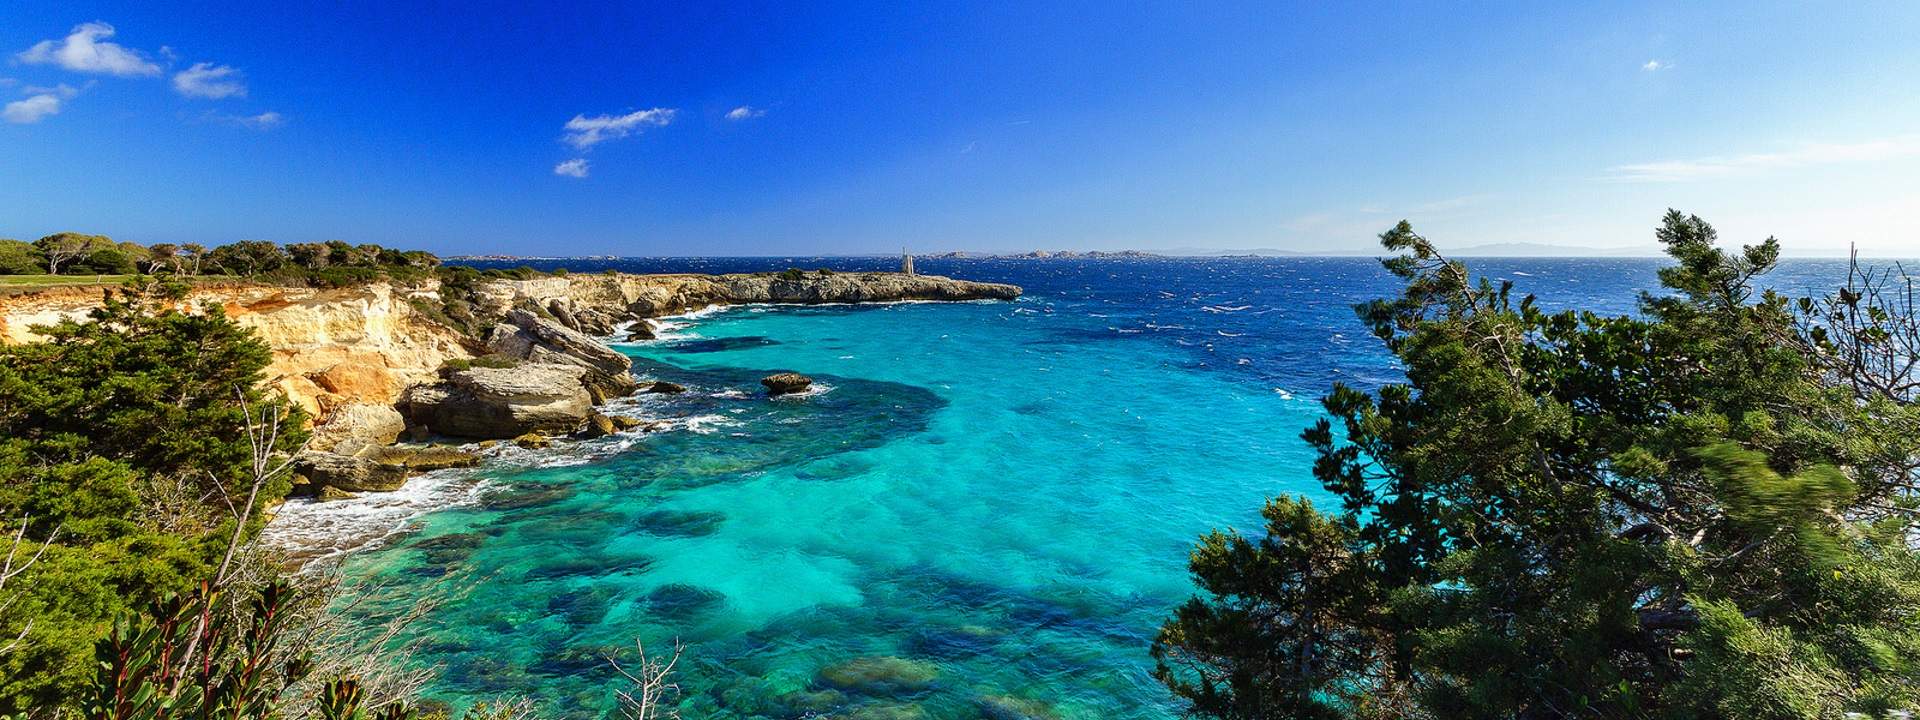 A unique cruise around the Dalmatian Islands